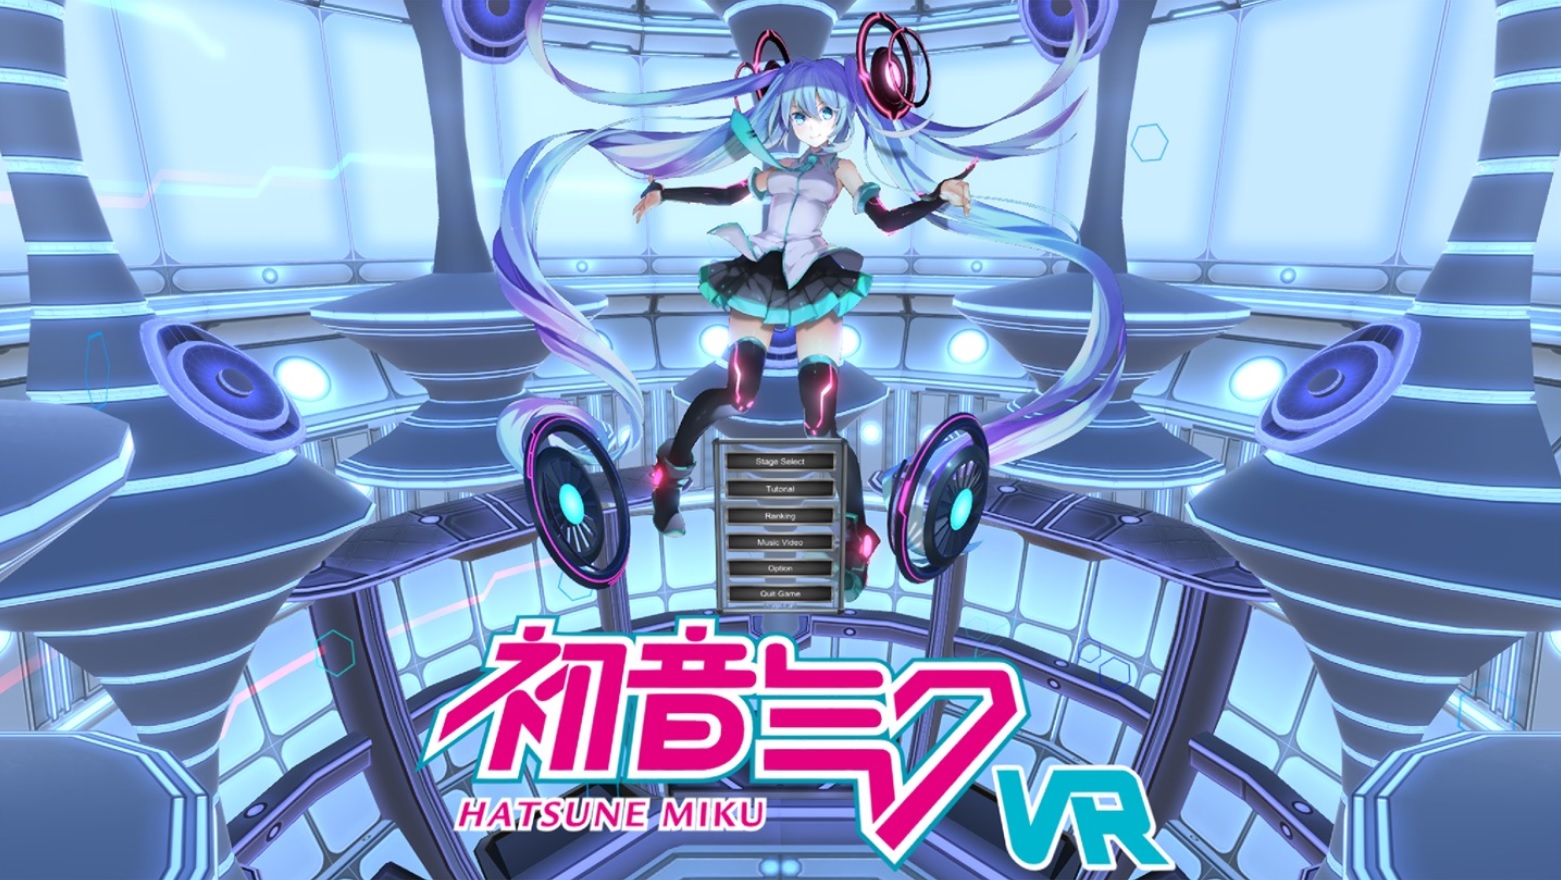 Hatsune Miku VR Oculus Quest, world-famous virtual singer 